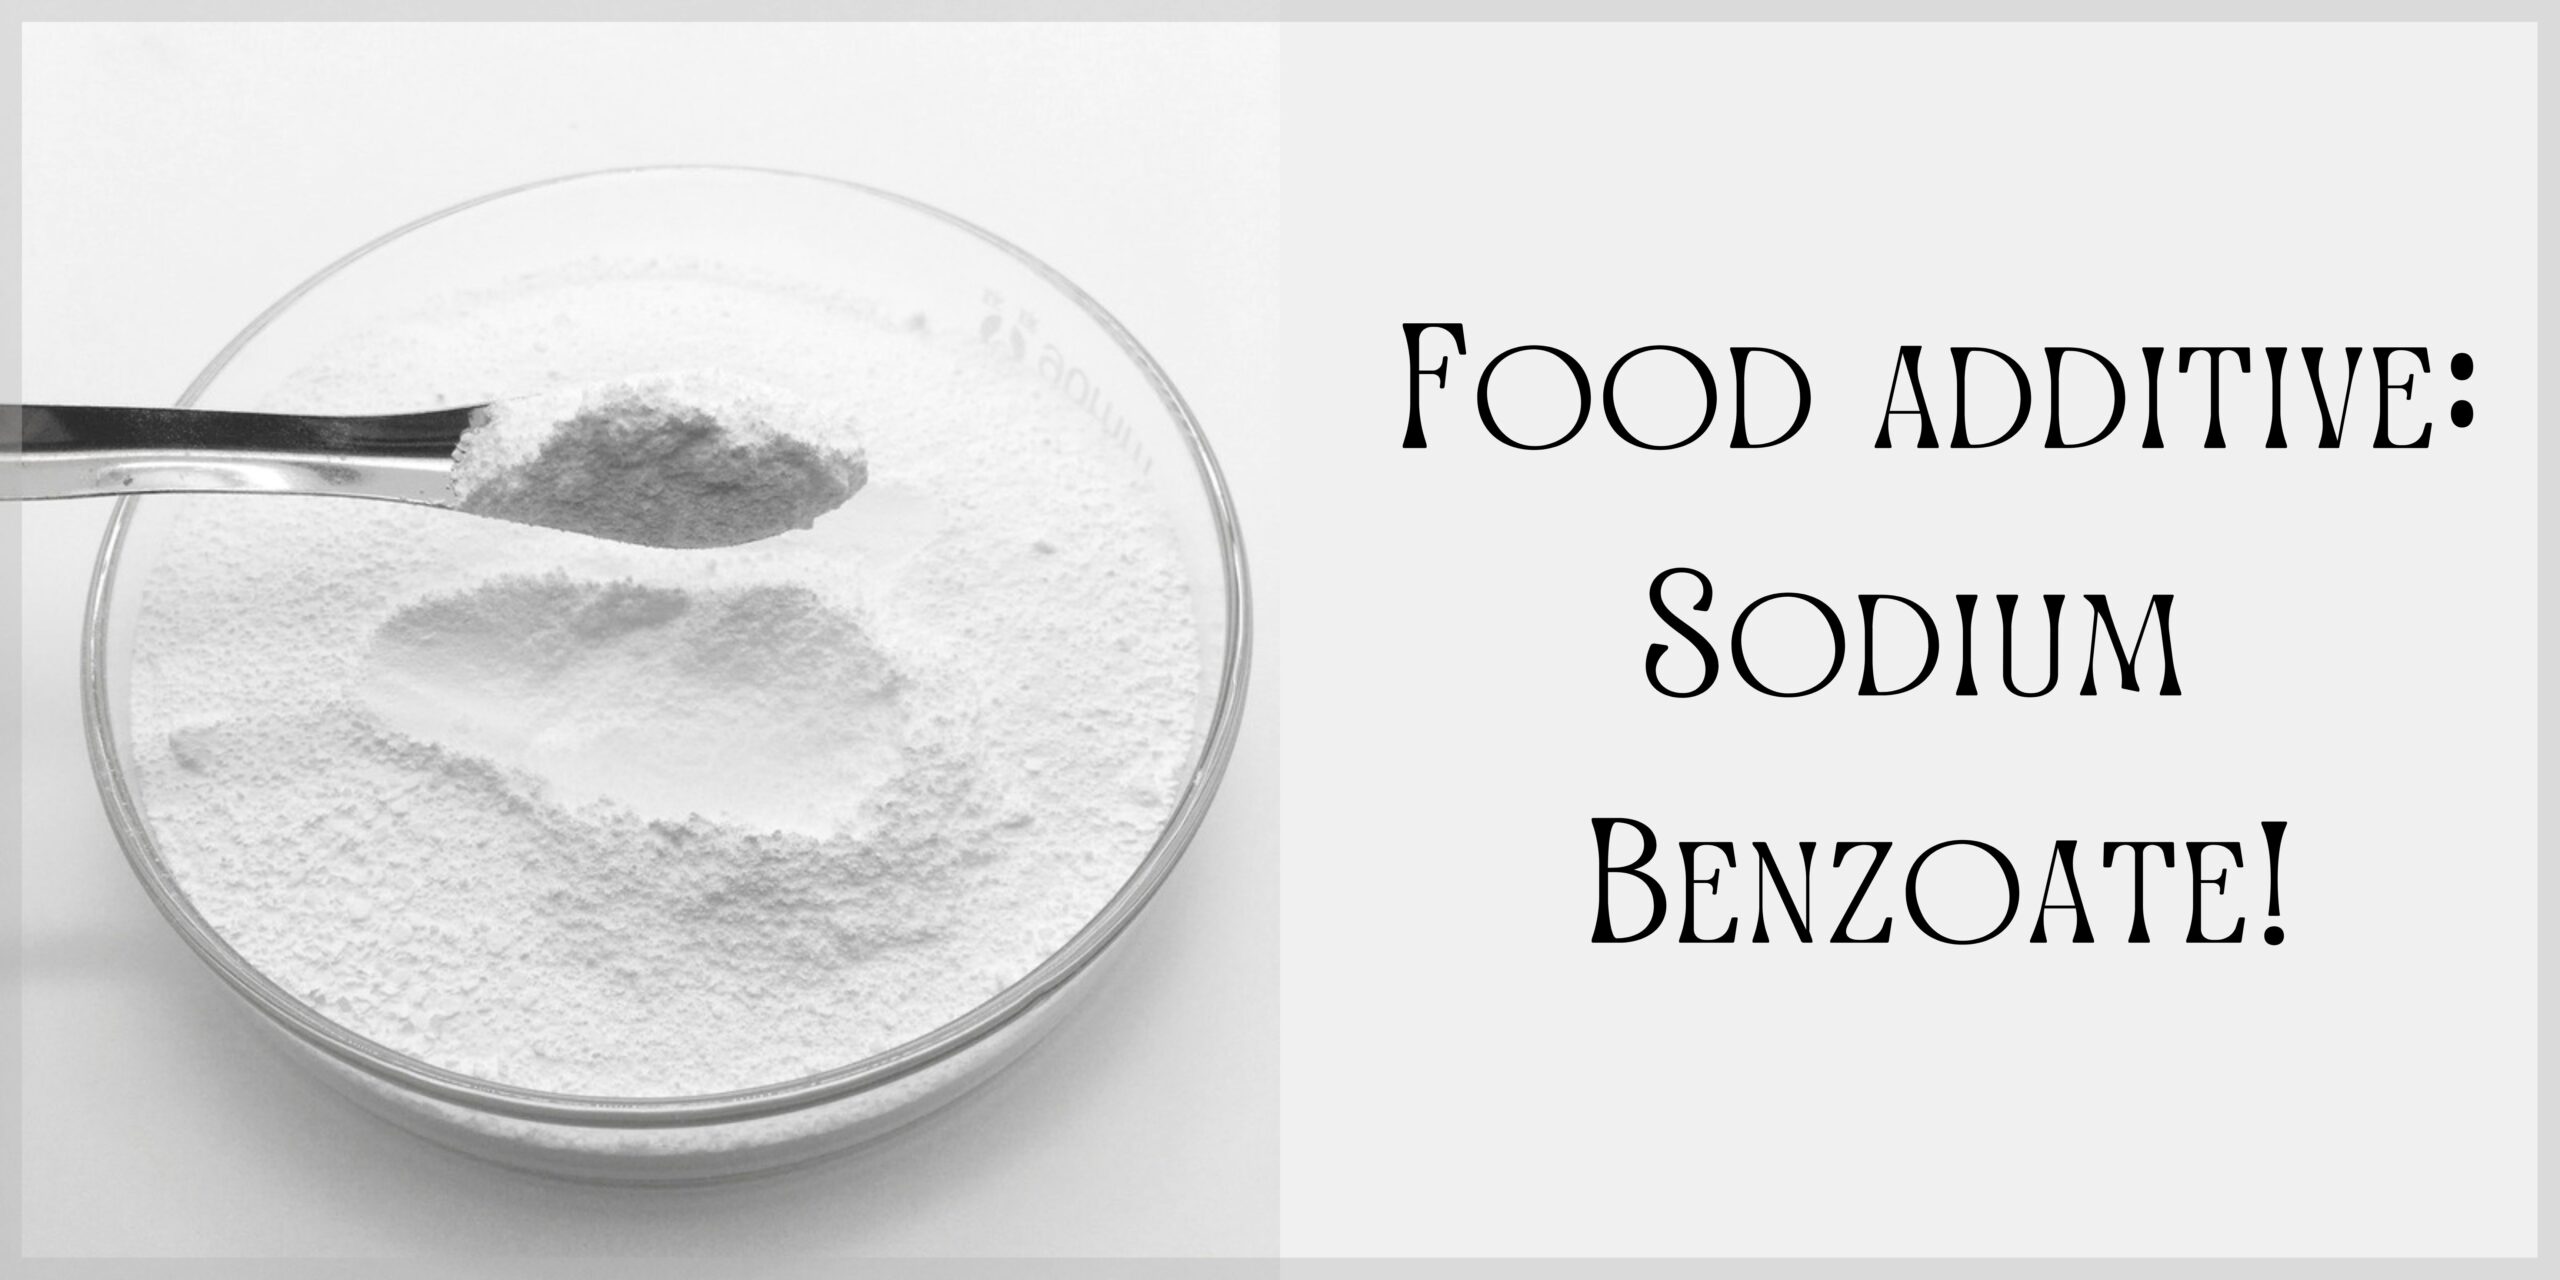 Food additive: Sodium Benzoate!